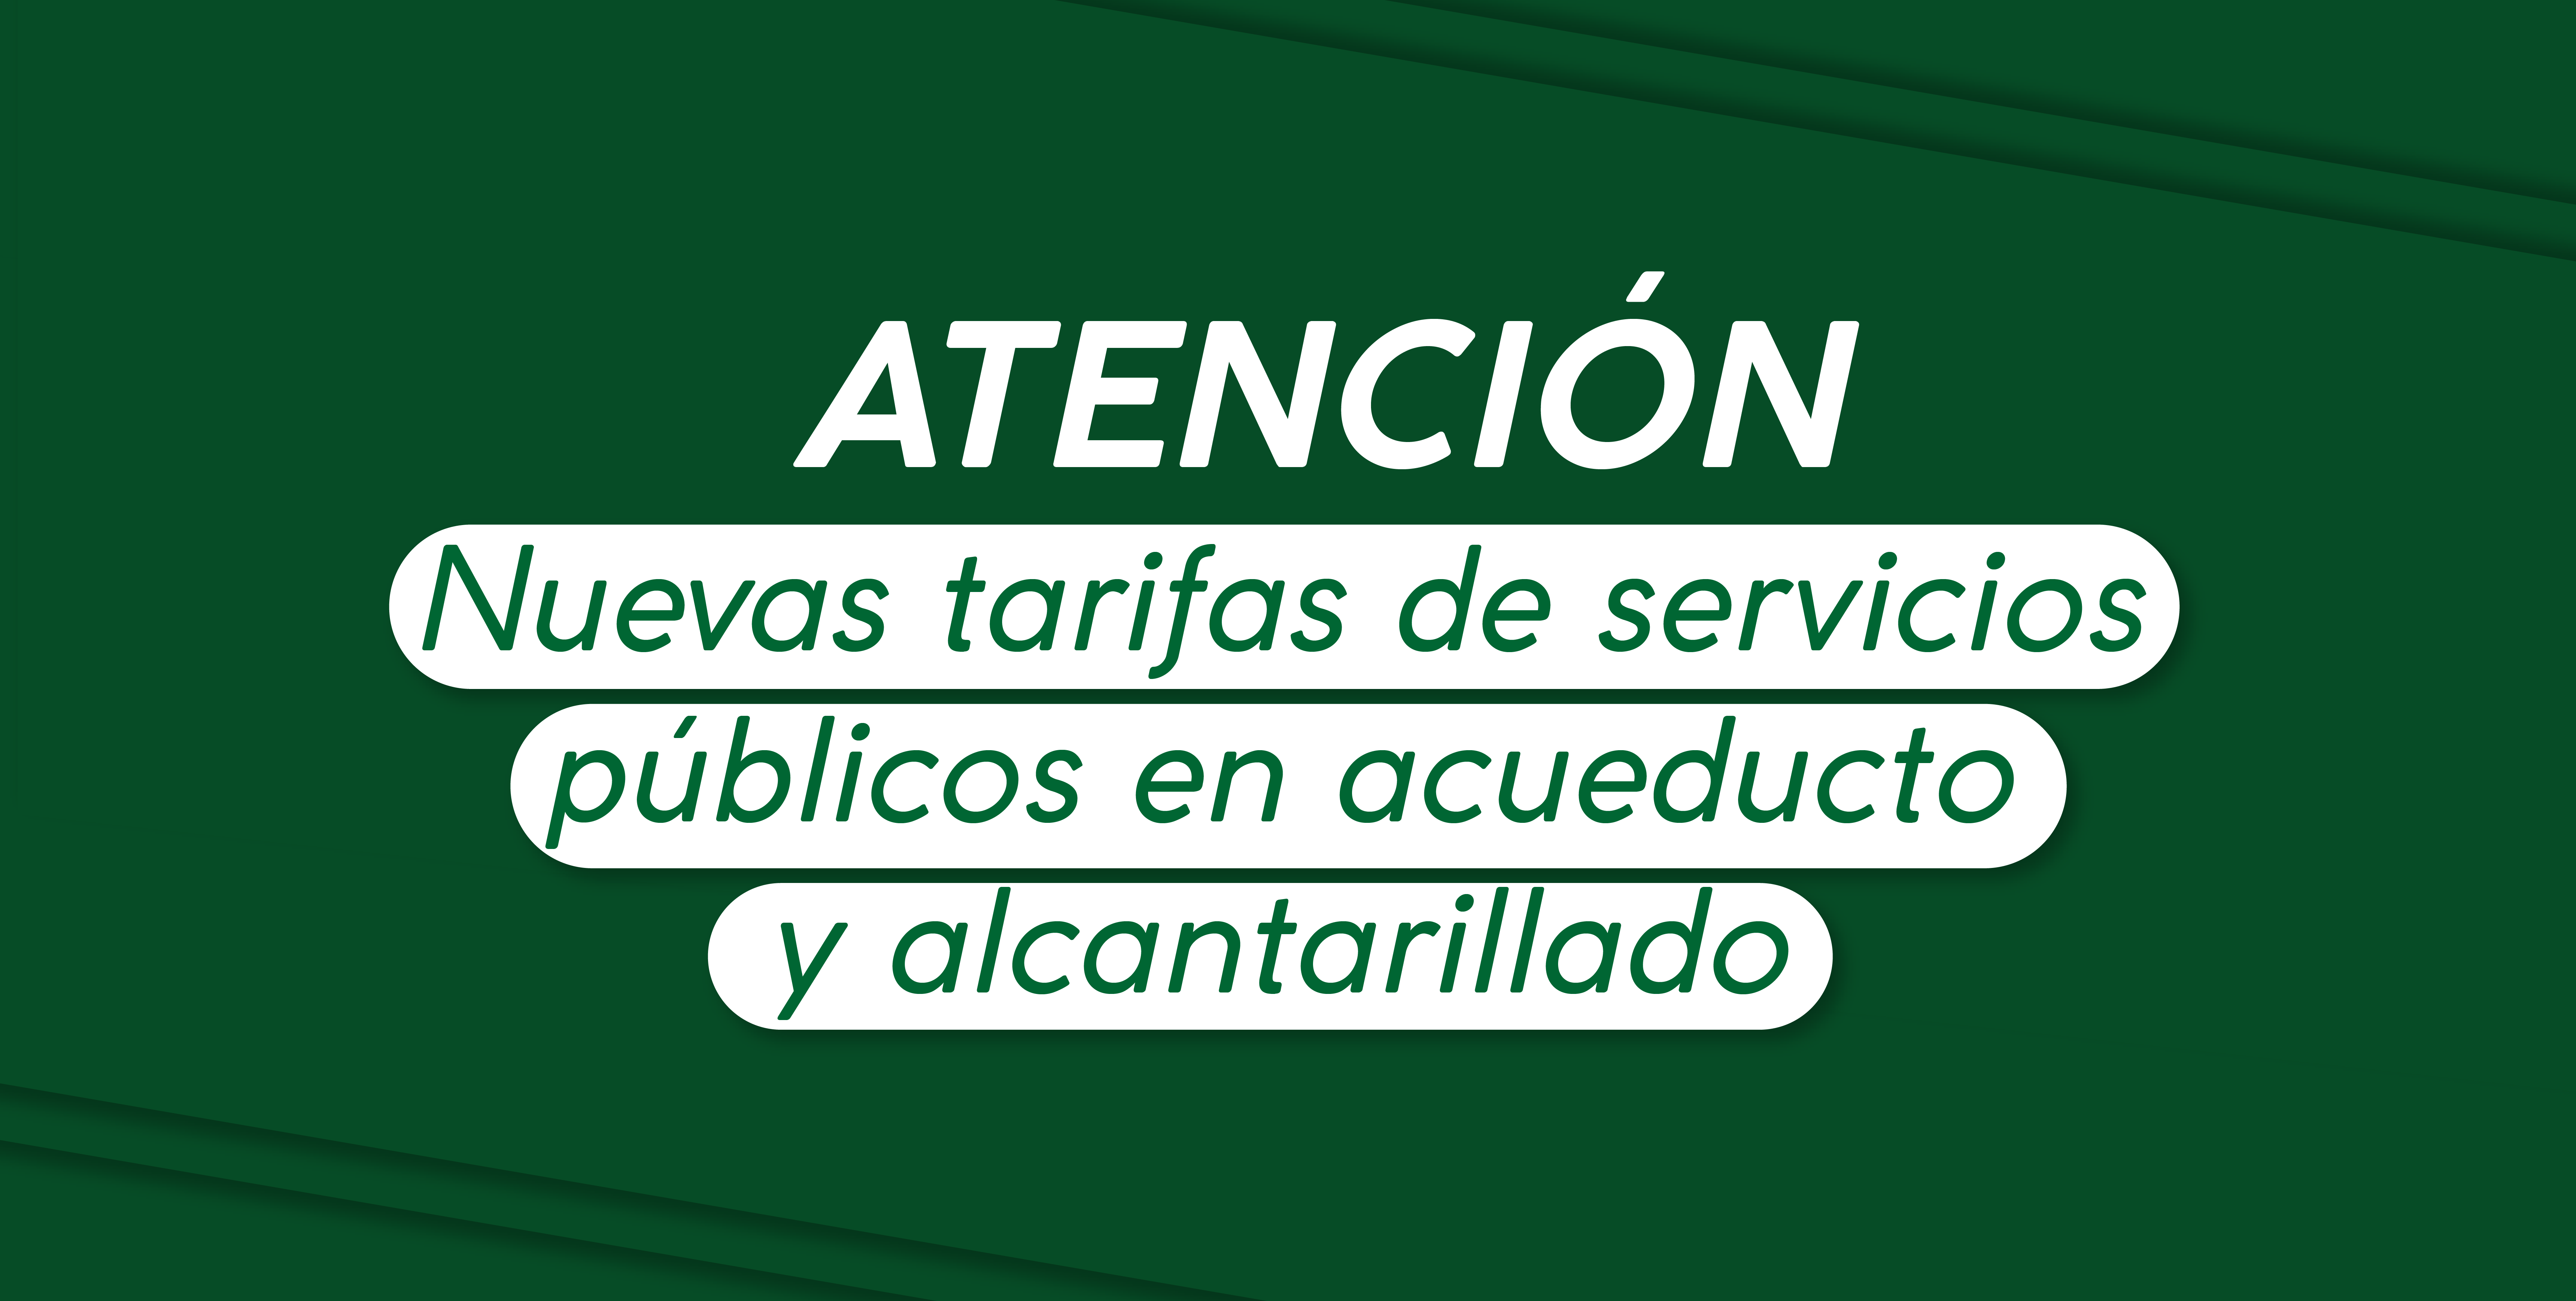 ATENCIÓN CONOZCA LAS NUEVAS TARIFAS DE SERVICIOS PÚBLICOS EN ACUEDUCTO Y ALCANTARILLADO ENERO 2023